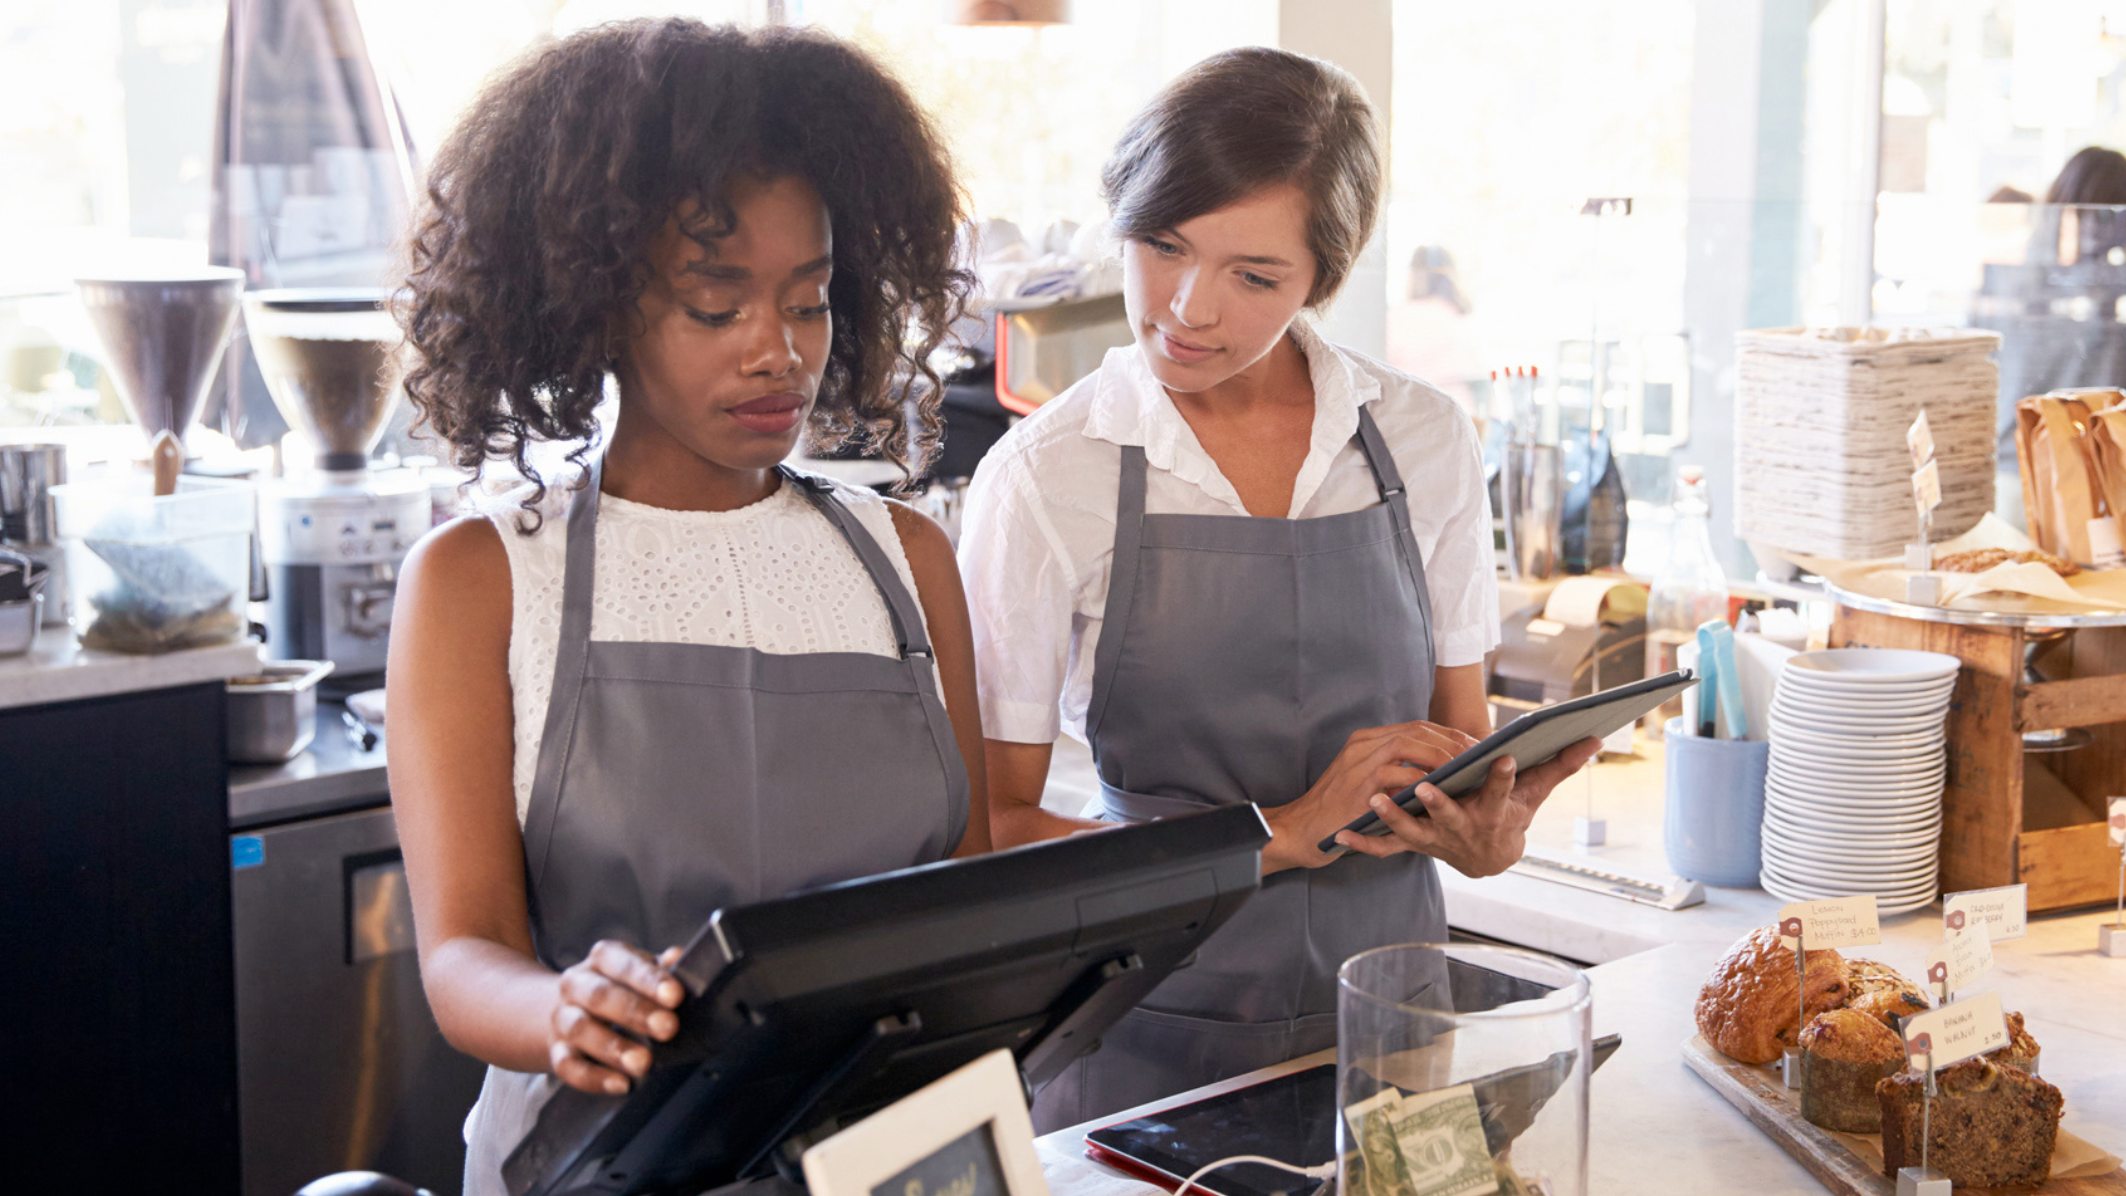 Deux femmes employées derrière un comptoir regardent une caisse enregistreuse sur un point de vente de restauration